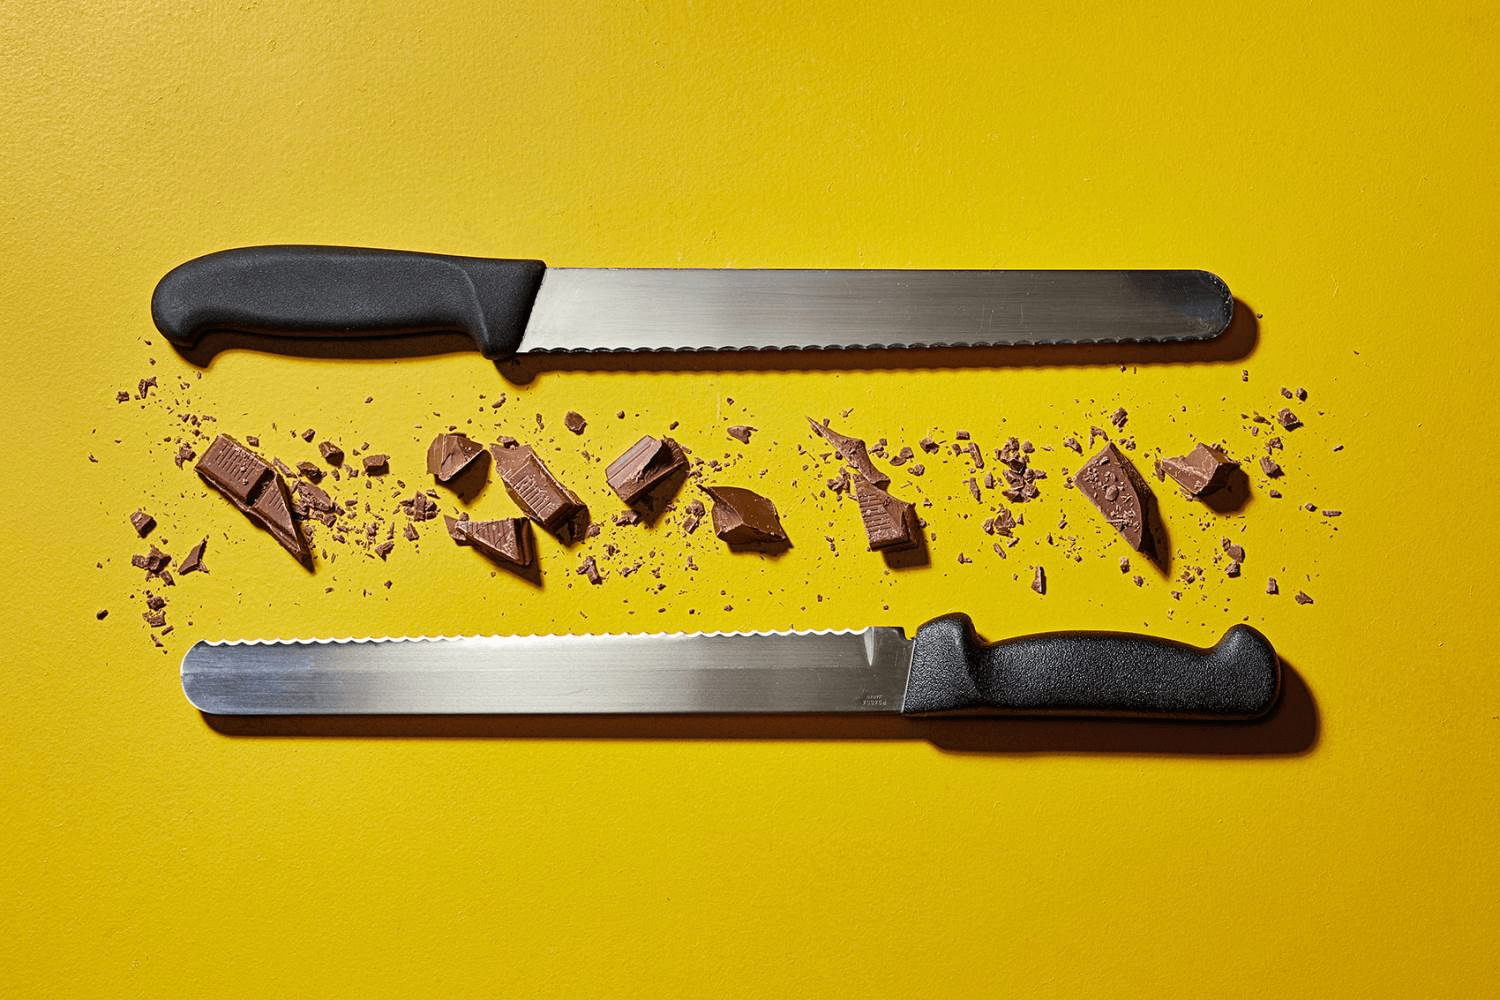 Những chiếc răng cưa của dao cắt bánh mì giúp bánh không bị nát khi cắt